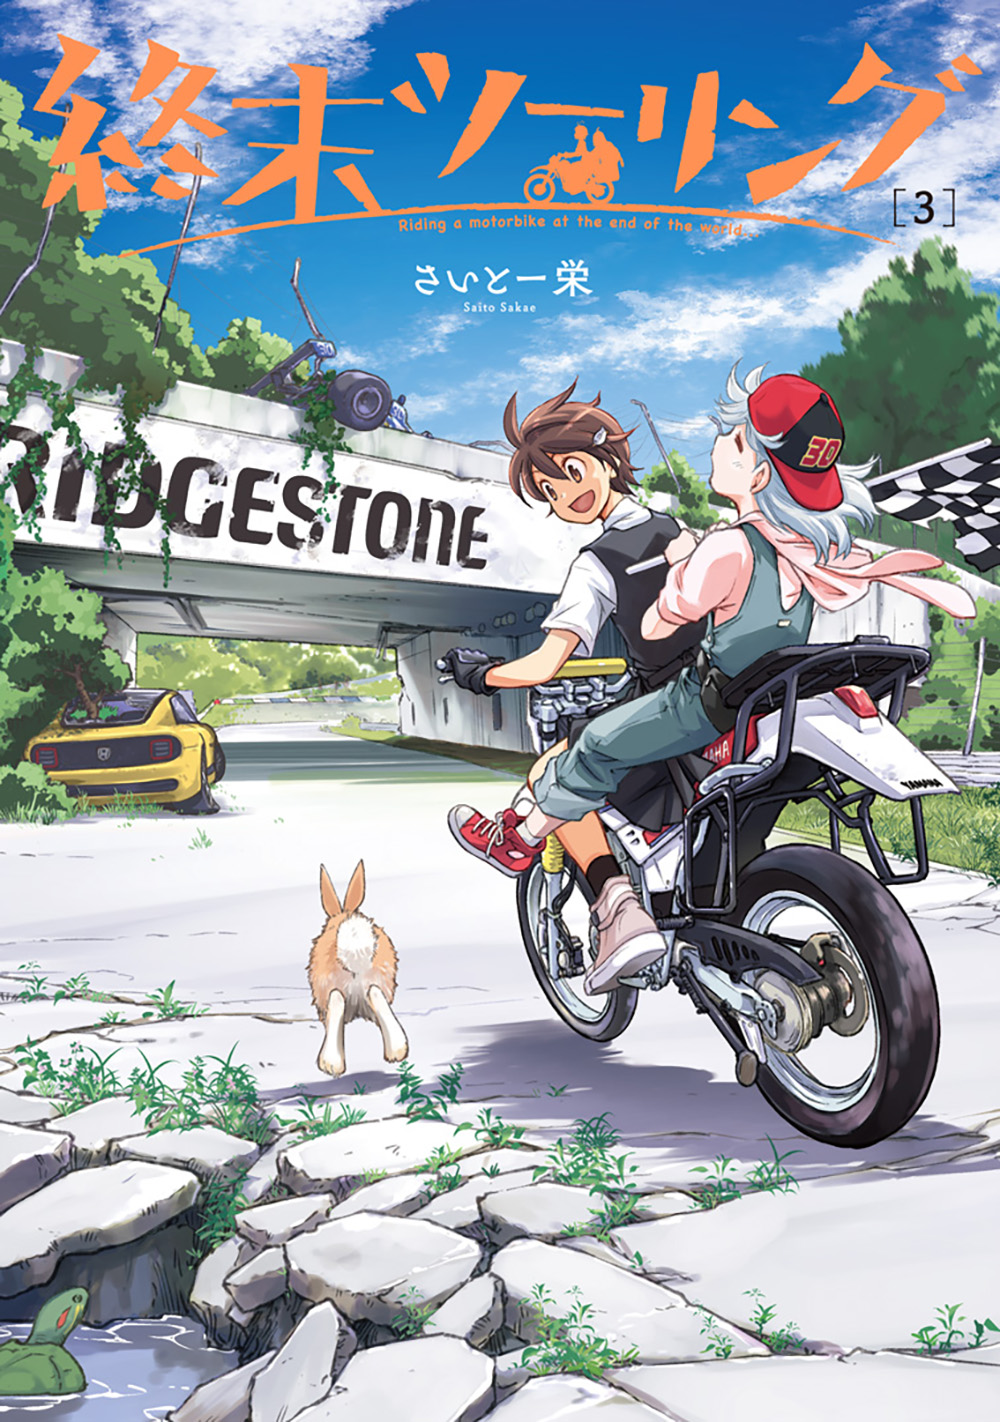 終末ツーリング第3巻が5月27日発売！ ライダーもおなじみバイクの聖地が続々登場 - バイクトピックス - レディスバイク